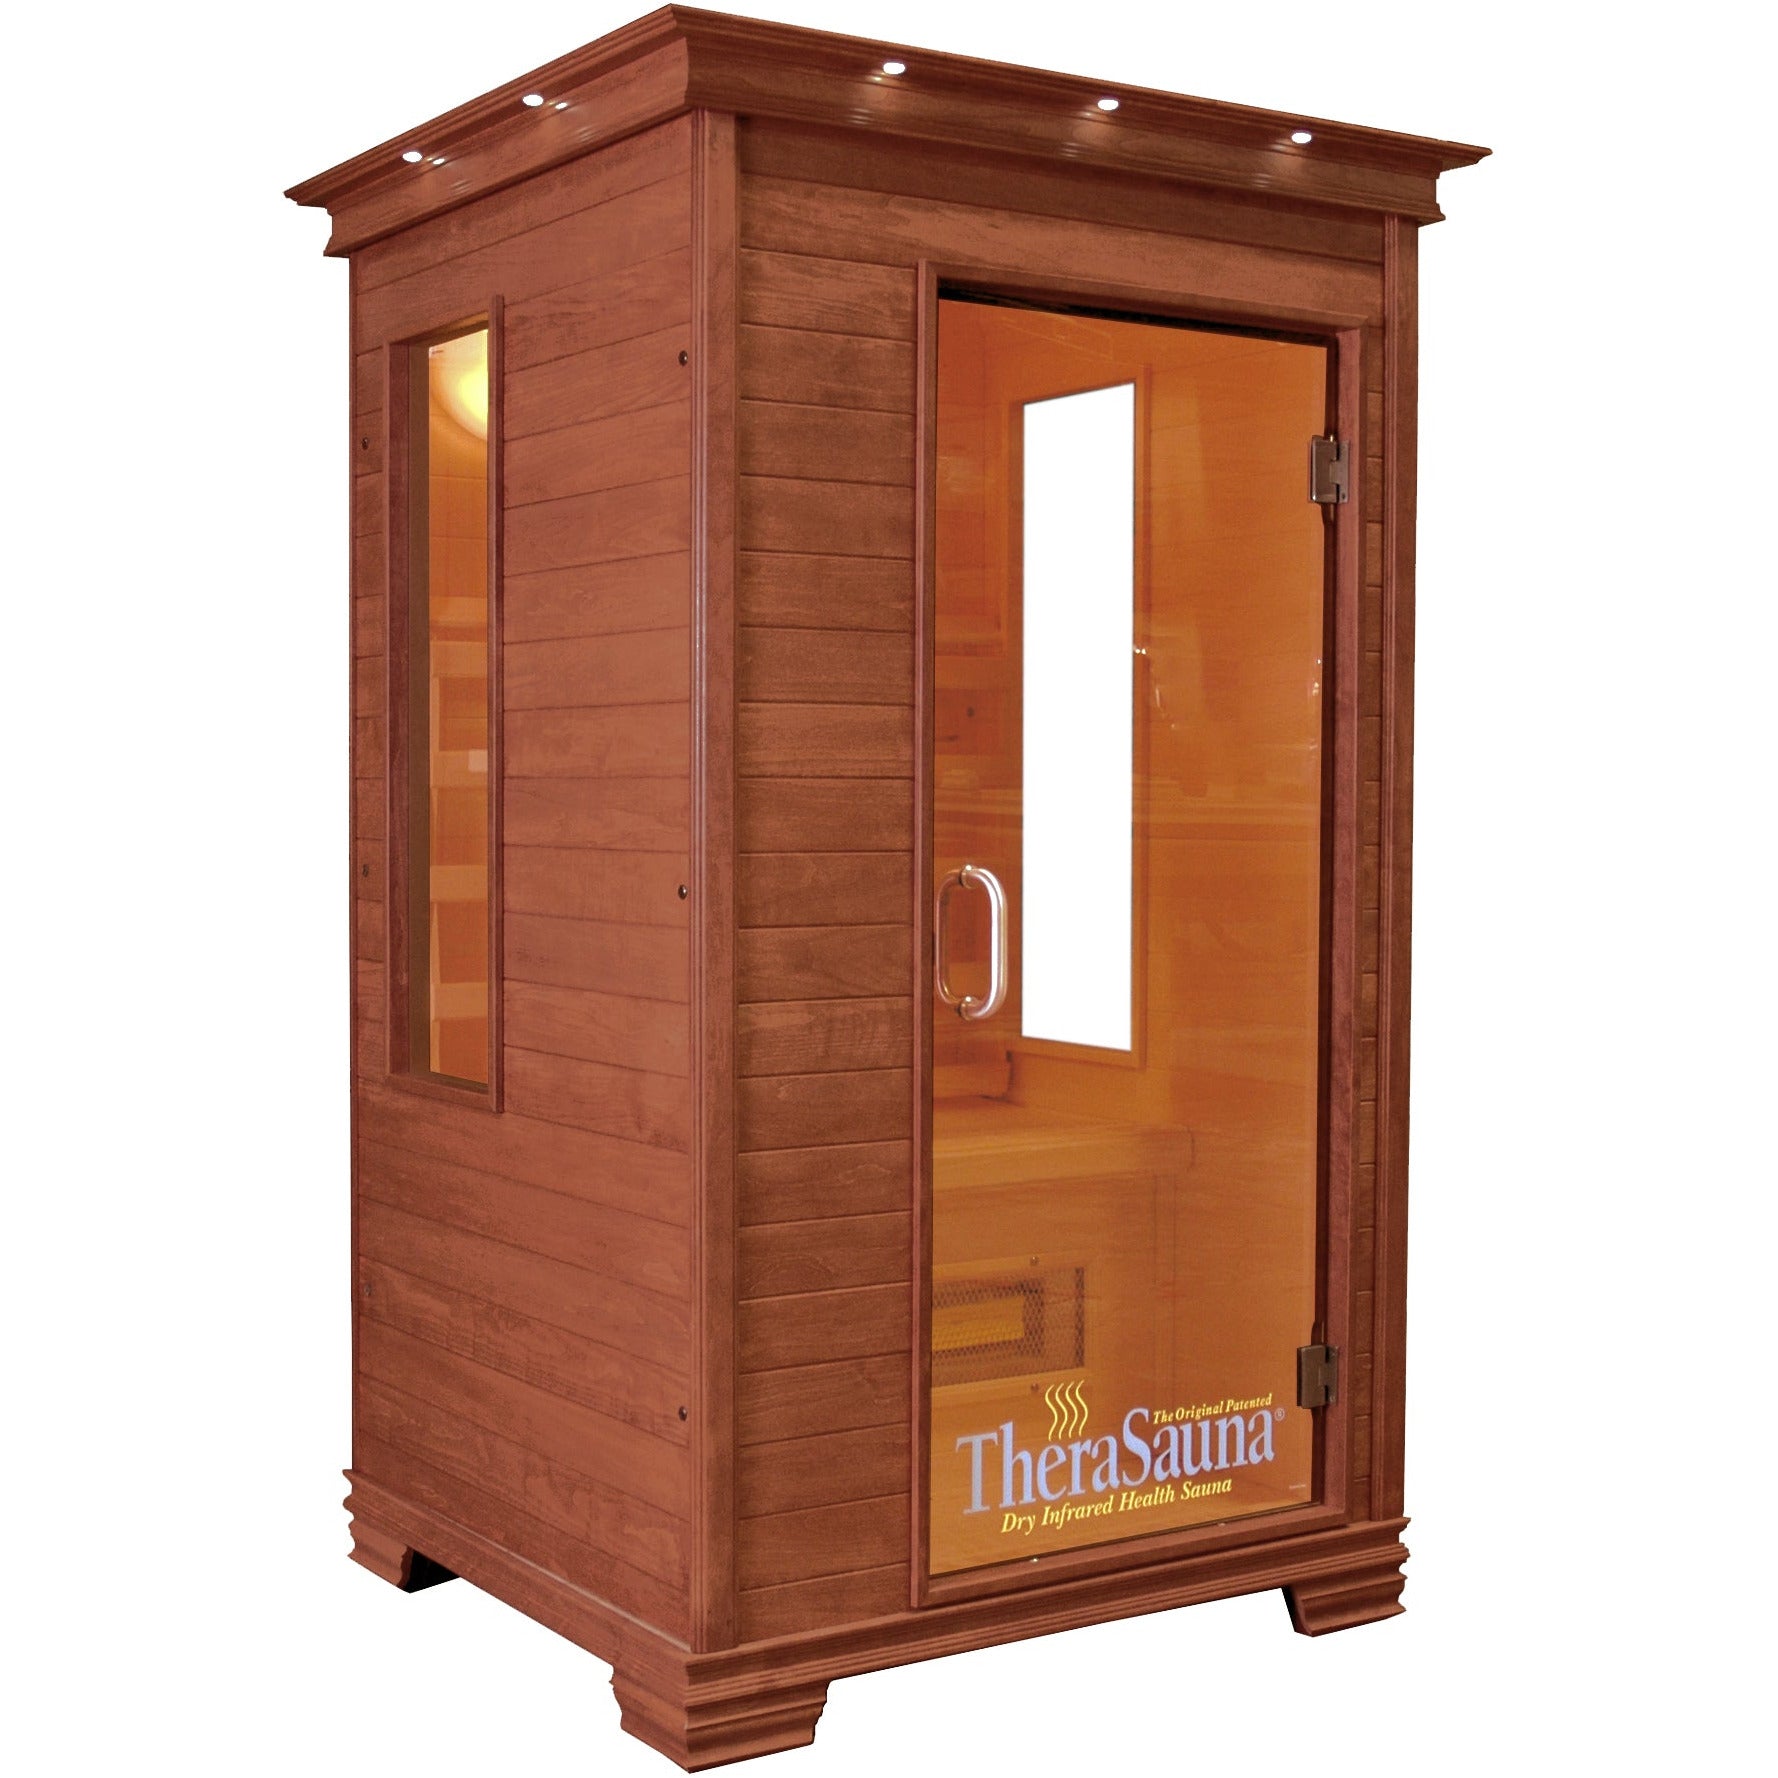 TheraSauna TS4746 Far Infrared Sauna - The Sauna World